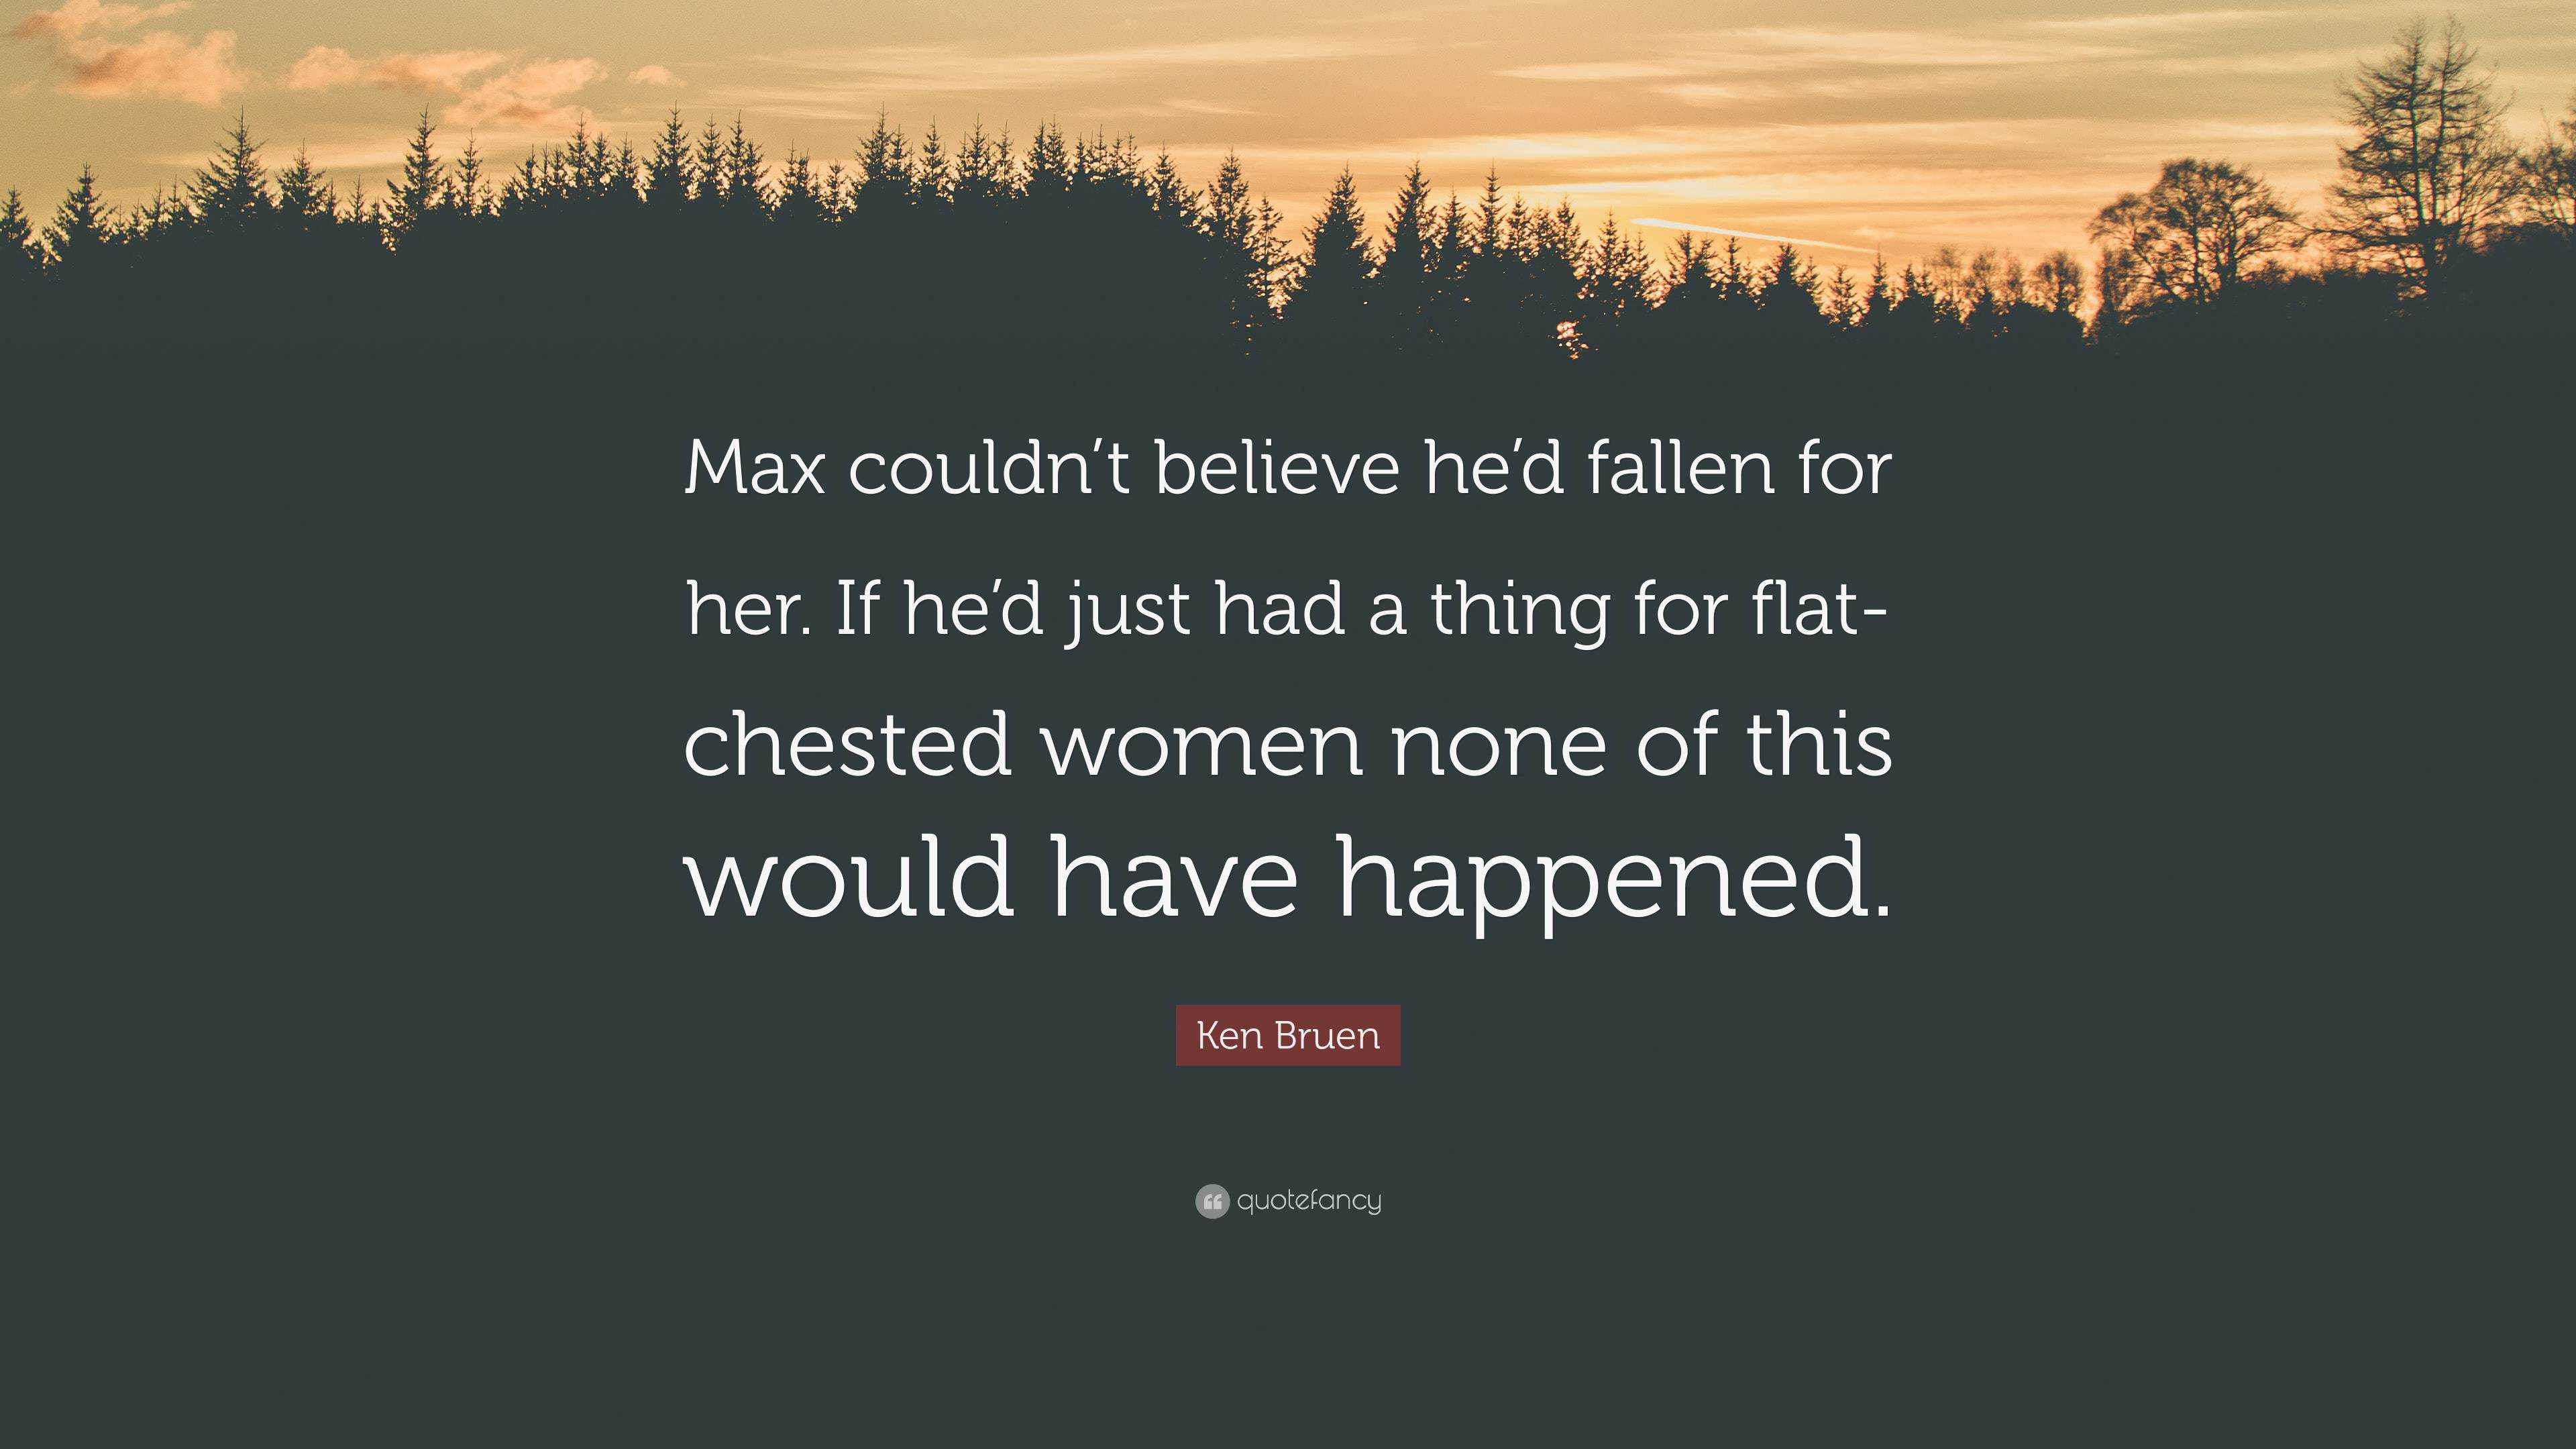 Ken Bruen Quote: “Max couldn't believe he'd fallen for her. If he